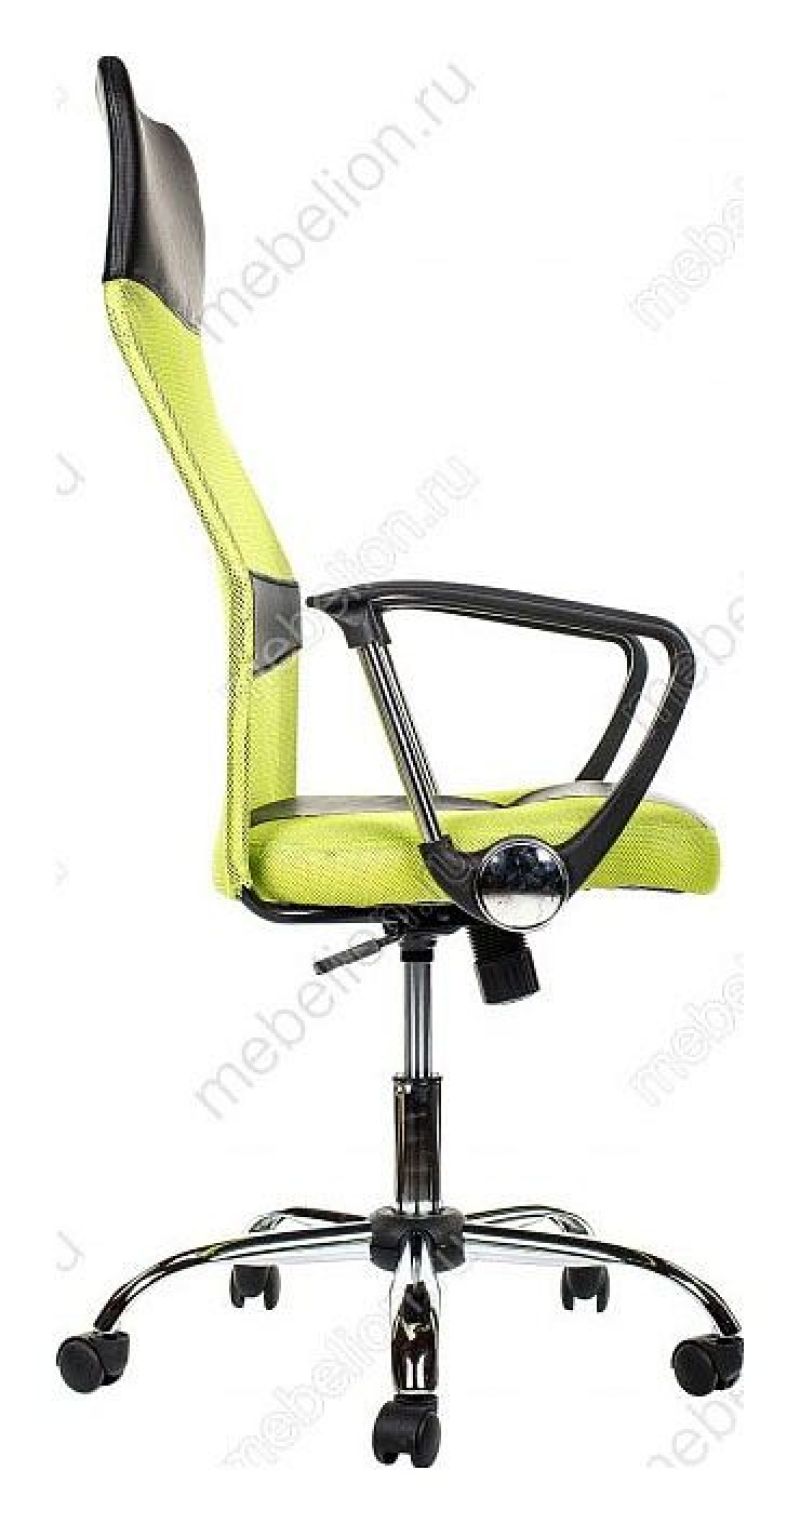 Компьютерное кресло arano зеленое